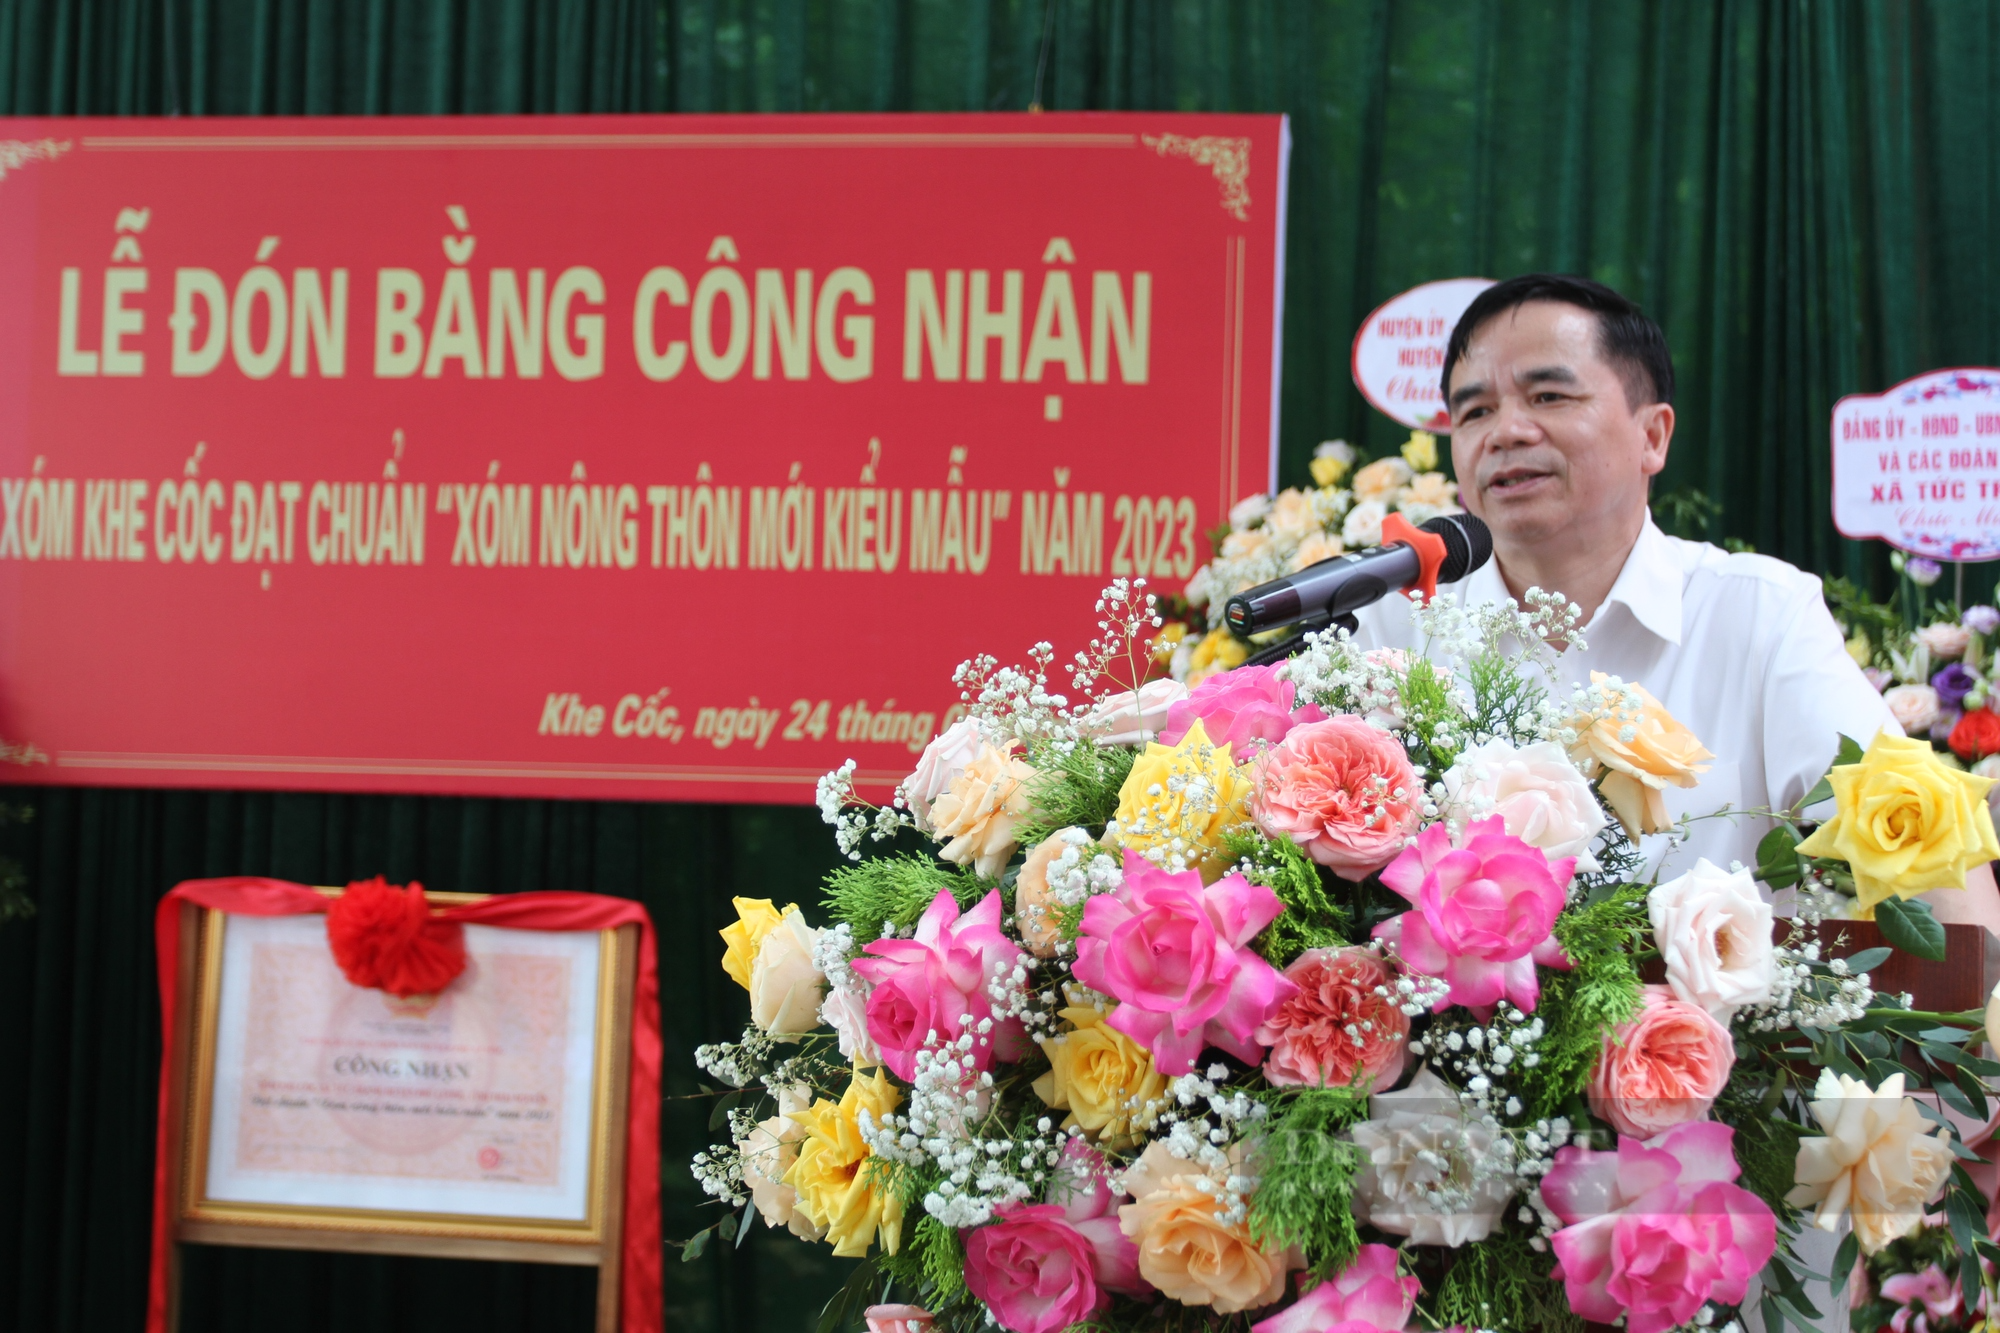 Nông thôn mới Thái Nguyên: Khe Cốc đón bằng công nhận xóm nông thôn mới kiểu mẫu - Ảnh 4.